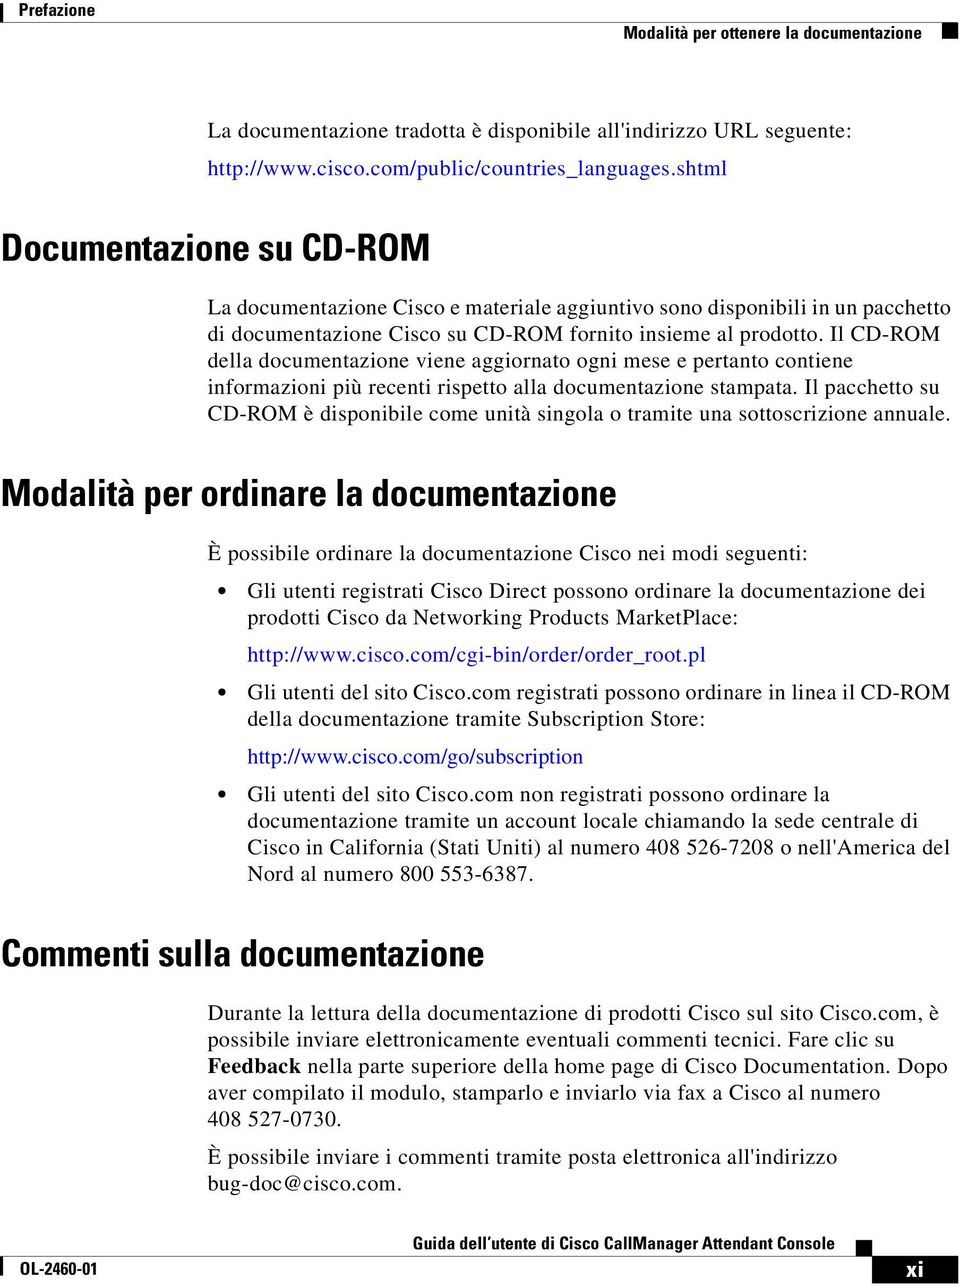 Il CD-ROM della documentazione viene aggiornato ogni mese e pertanto contiene informazioni più recenti rispetto alla documentazione stampata.